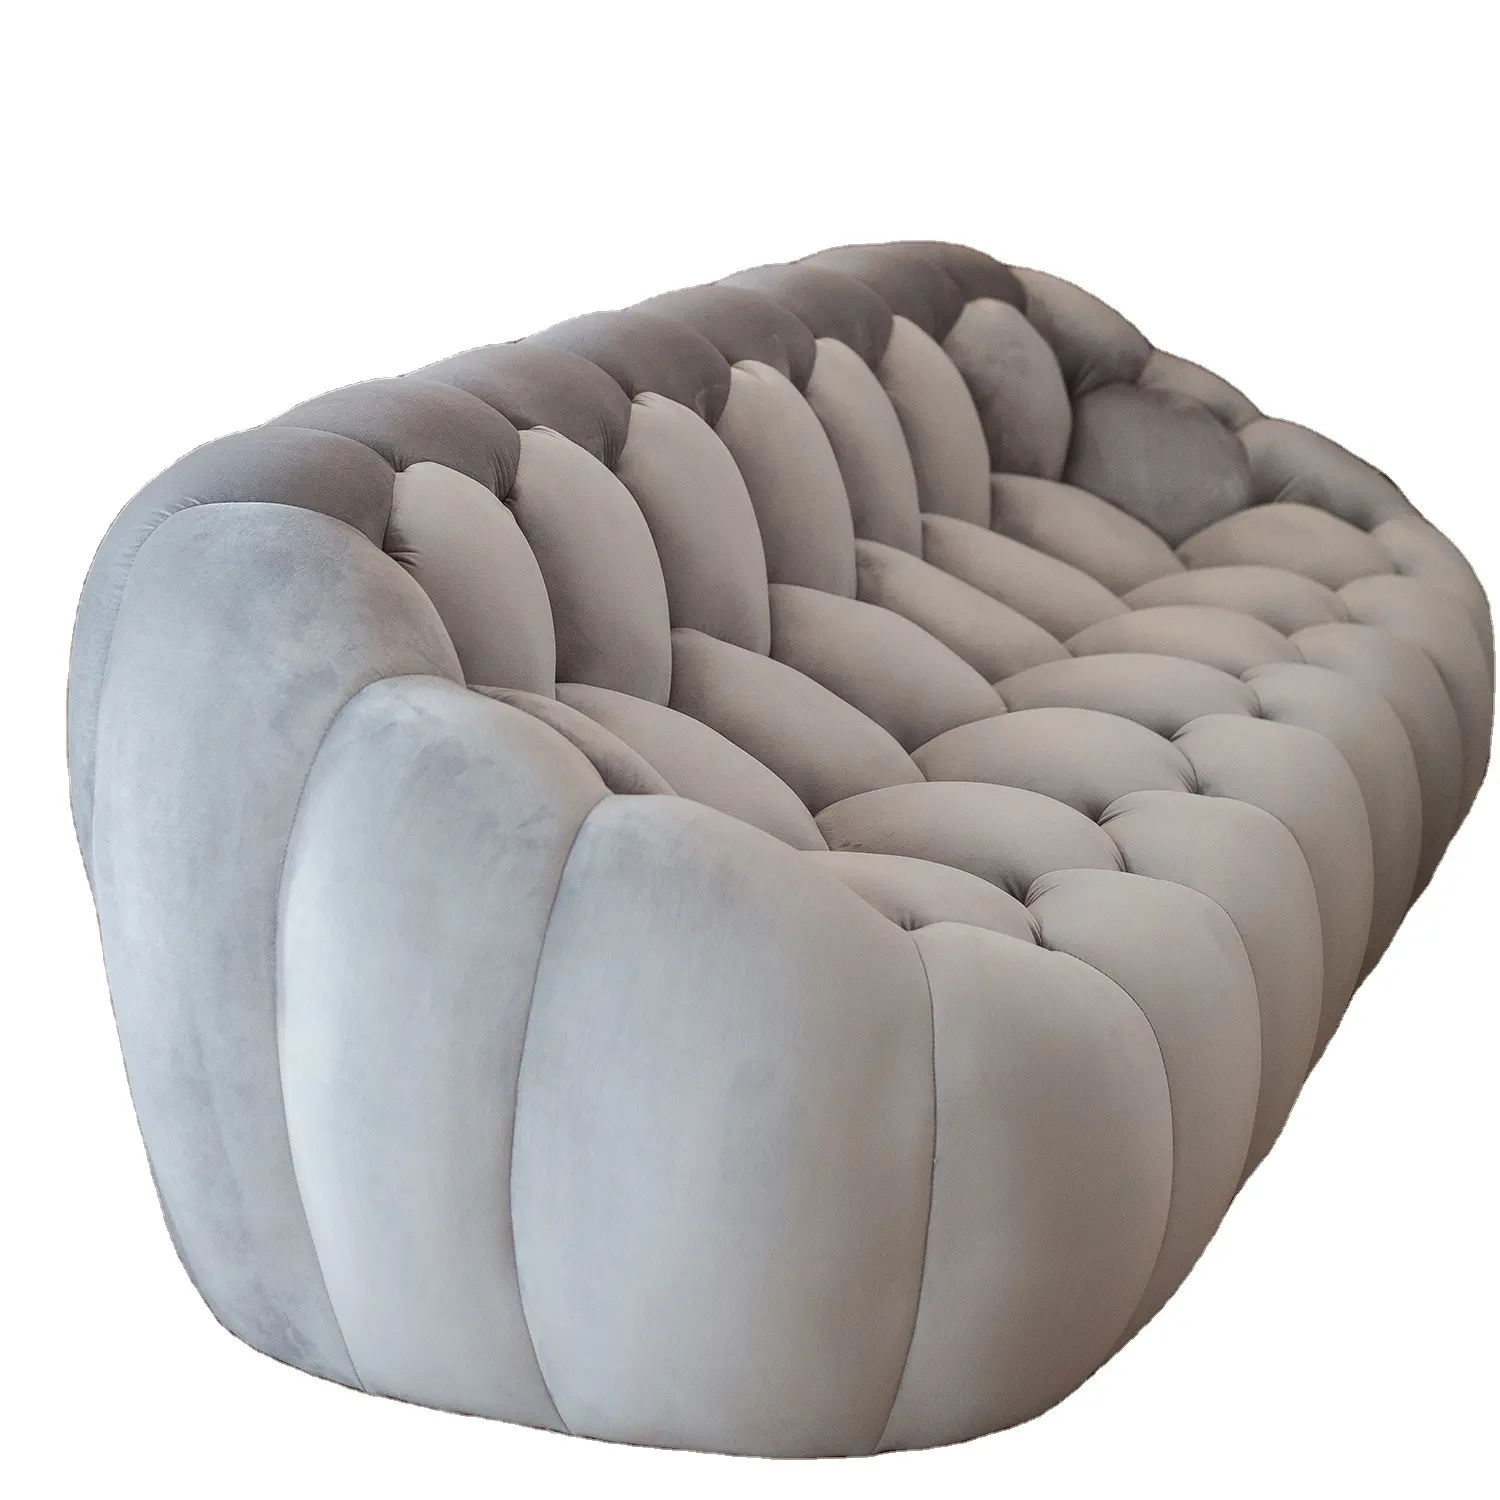 Sofá cama de espuma suave para sala de estar, diseño de fútbol, color gris